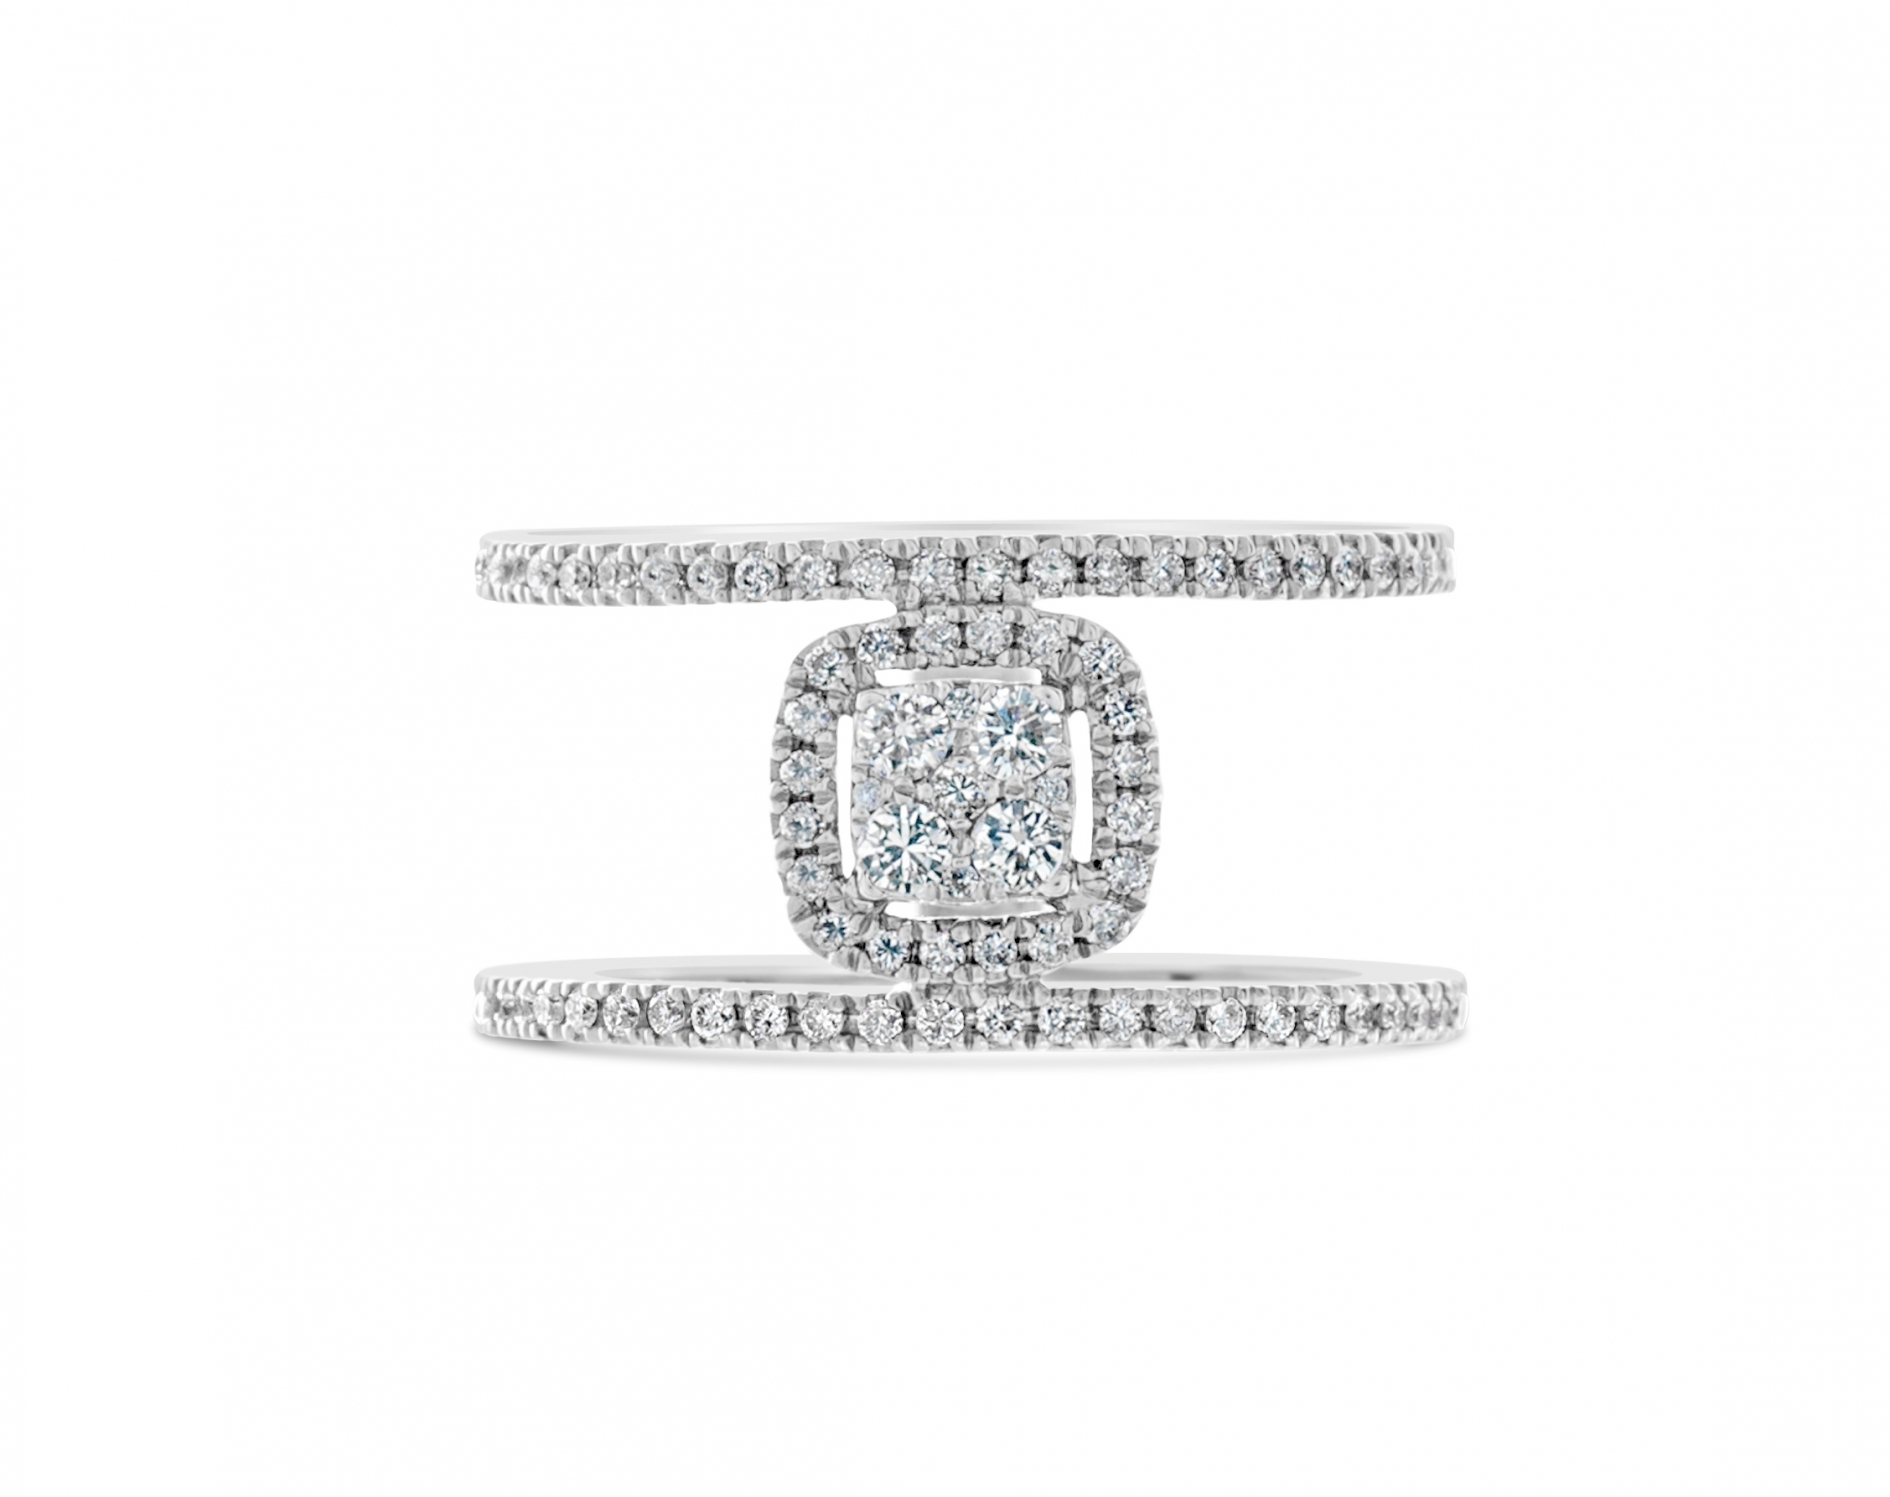 18k white gold halo illusion set round shaped diamond engagement ring